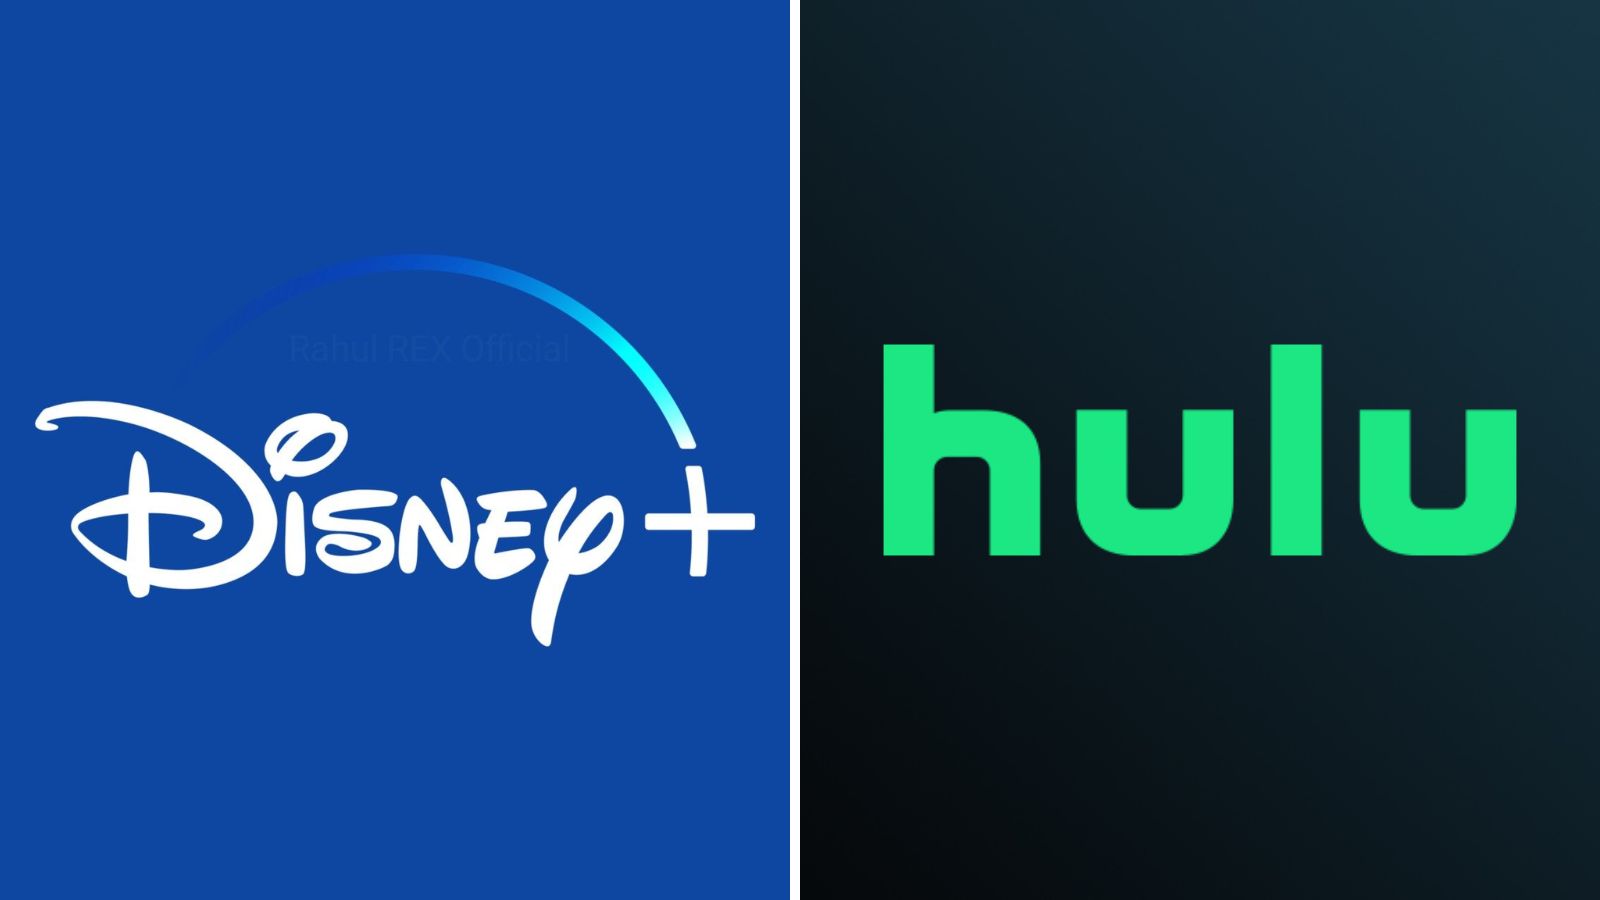 Disney Plus anuncia fusión de su contenido con la plataforma Hulu